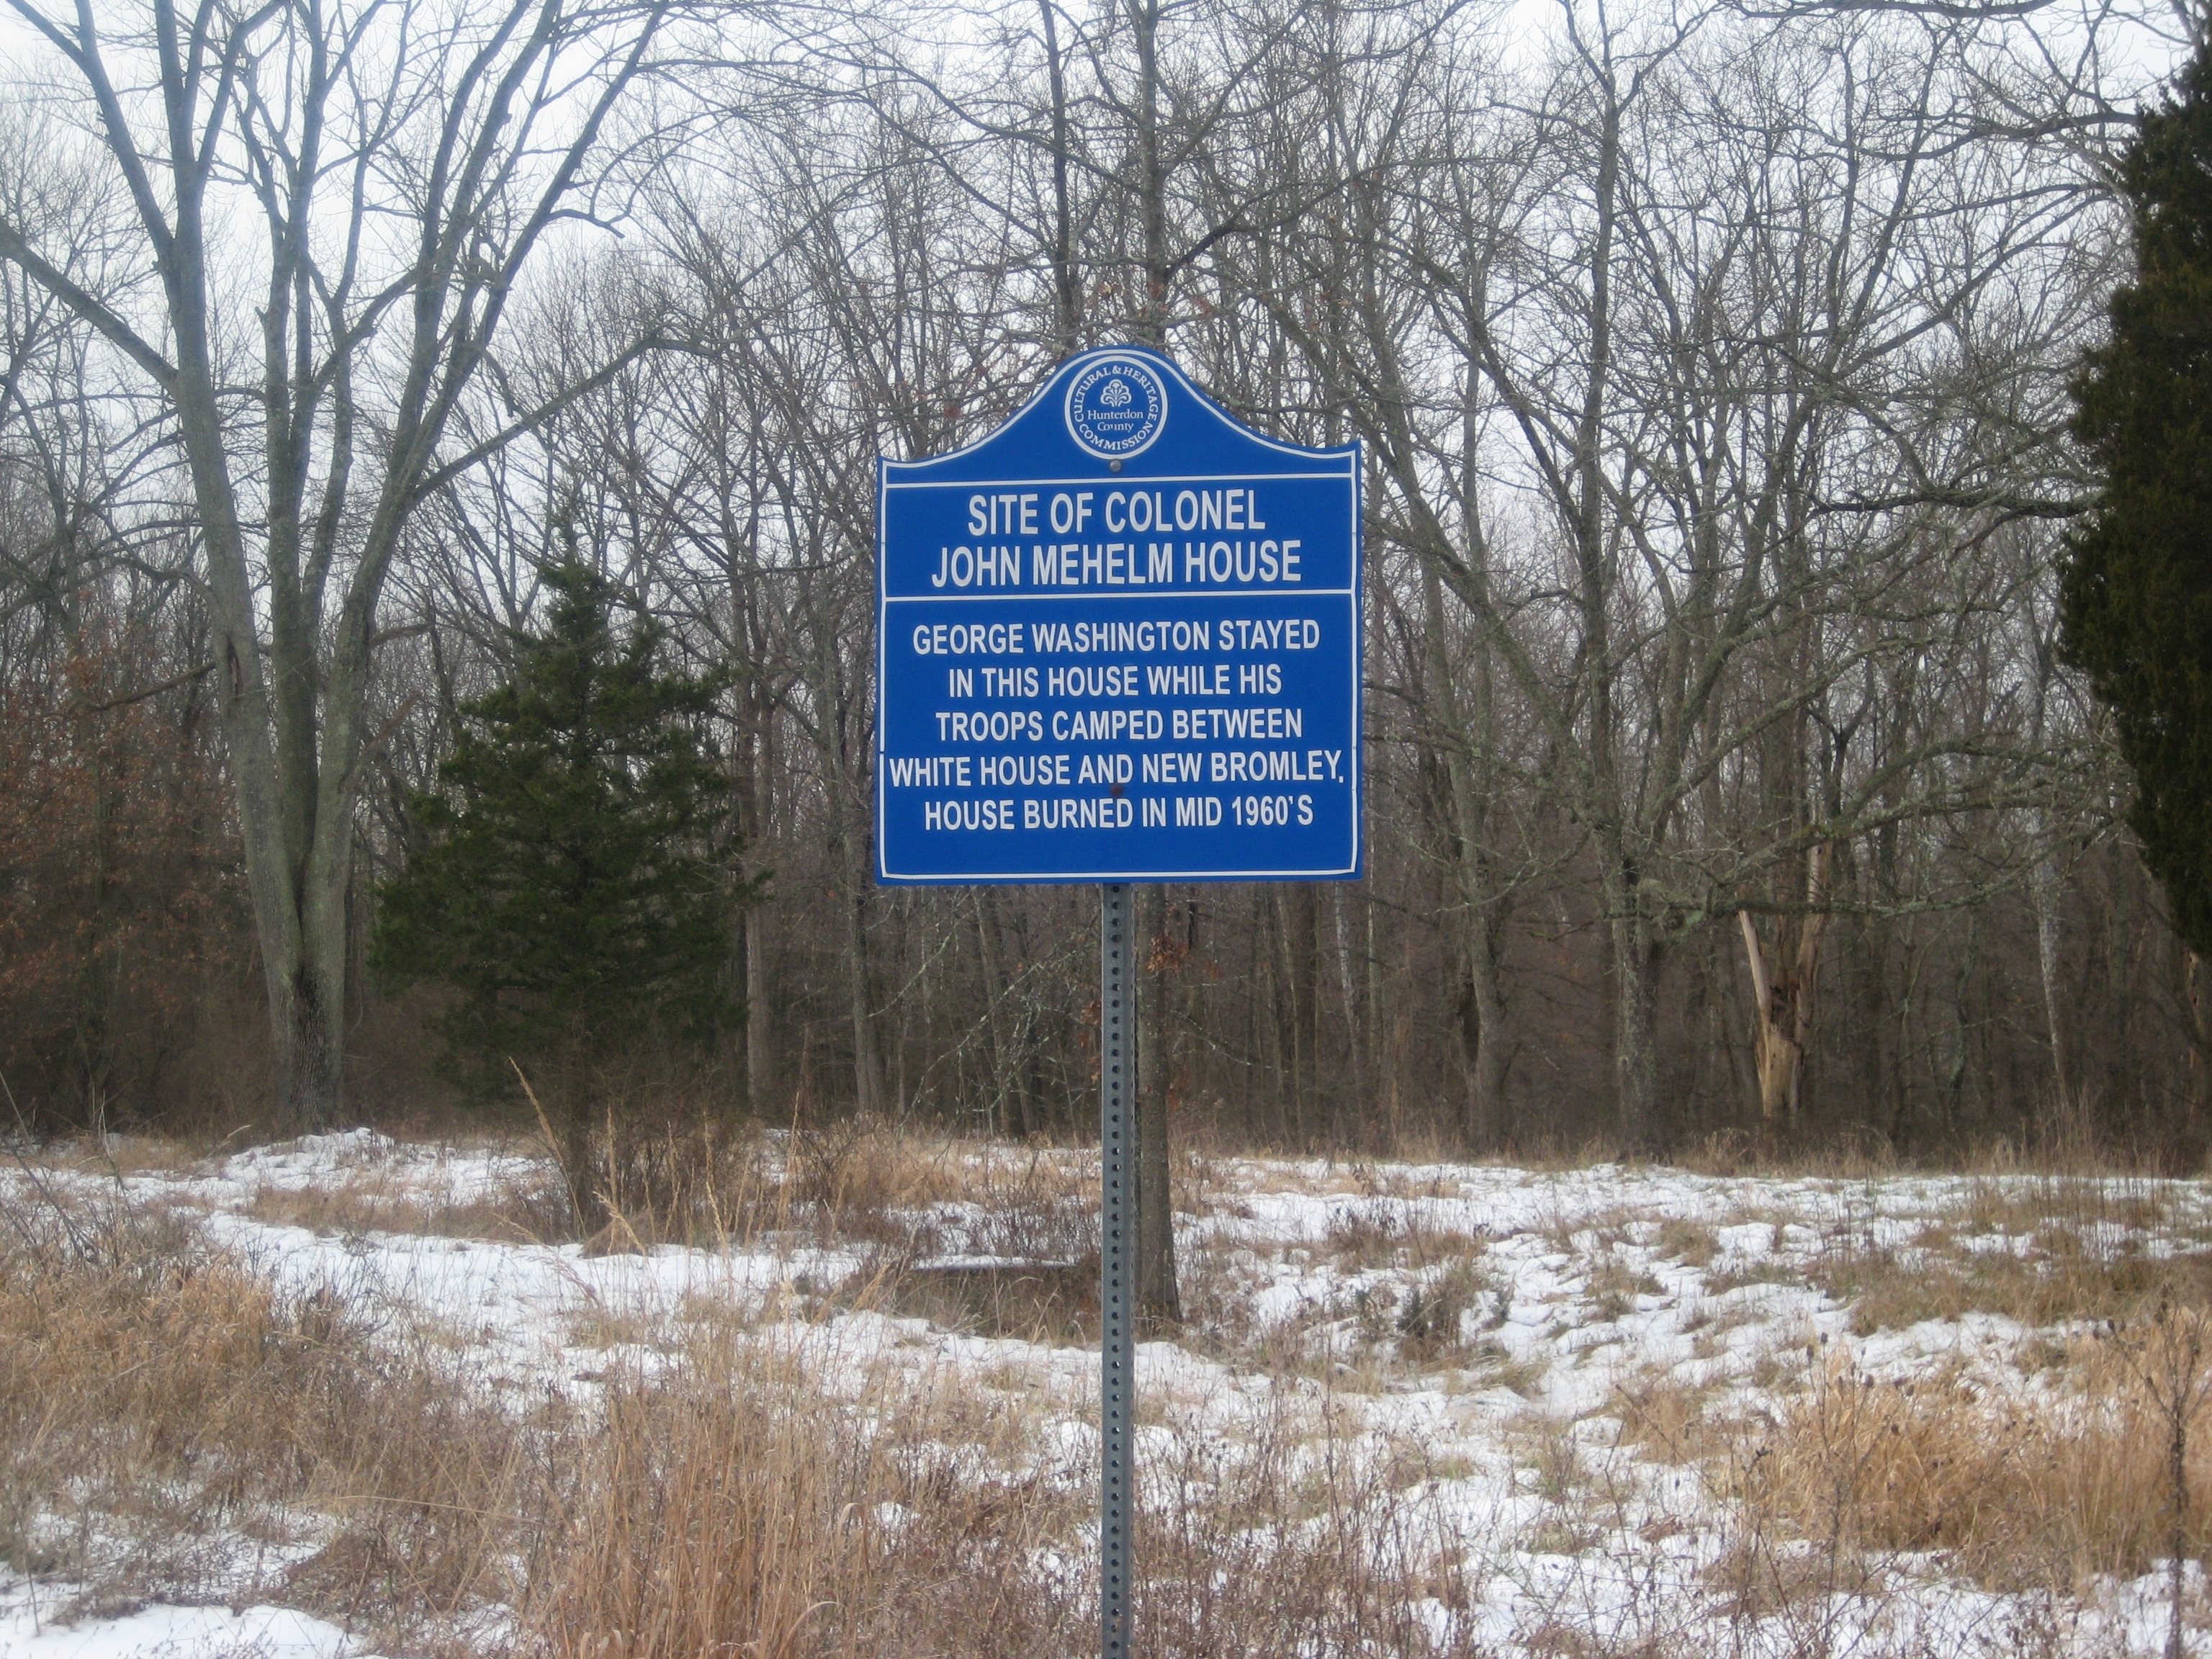 Site of Colonel John Mehelm House Marker